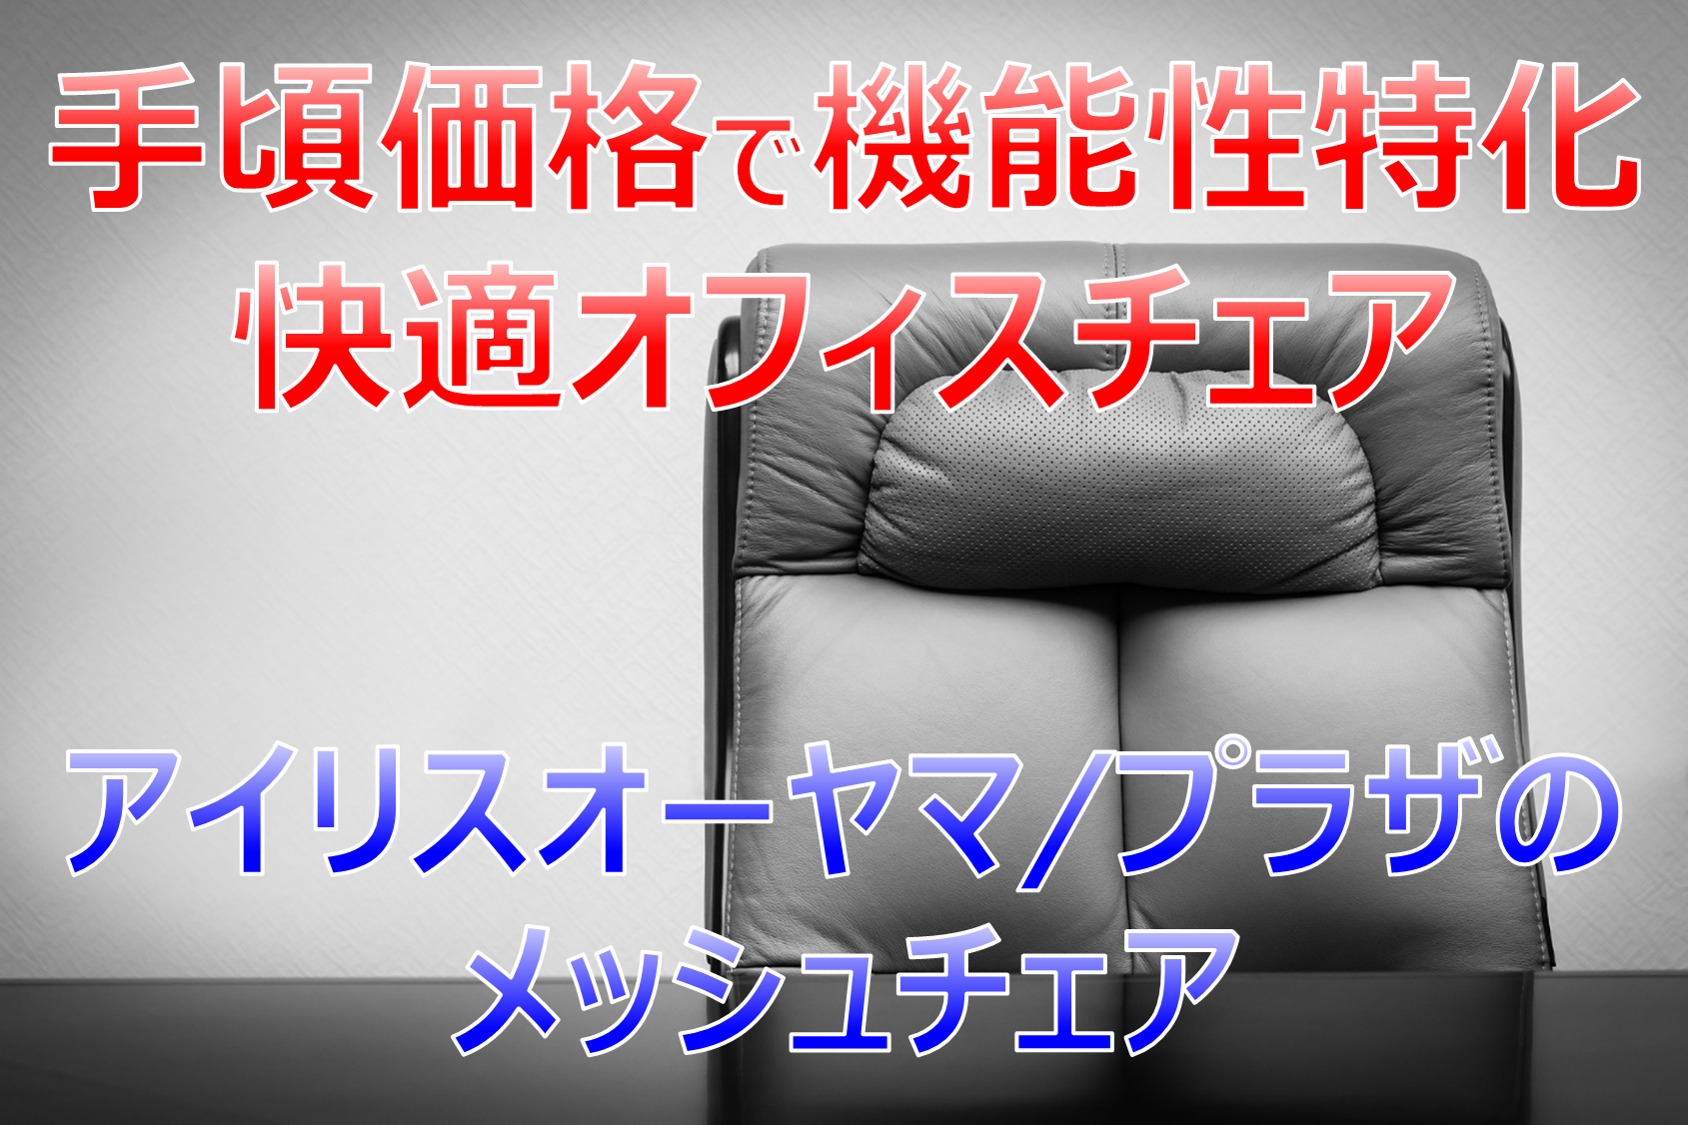 機能性に特化！～1万円代の椅子はこれで決まり！｜アイリスオーヤマ